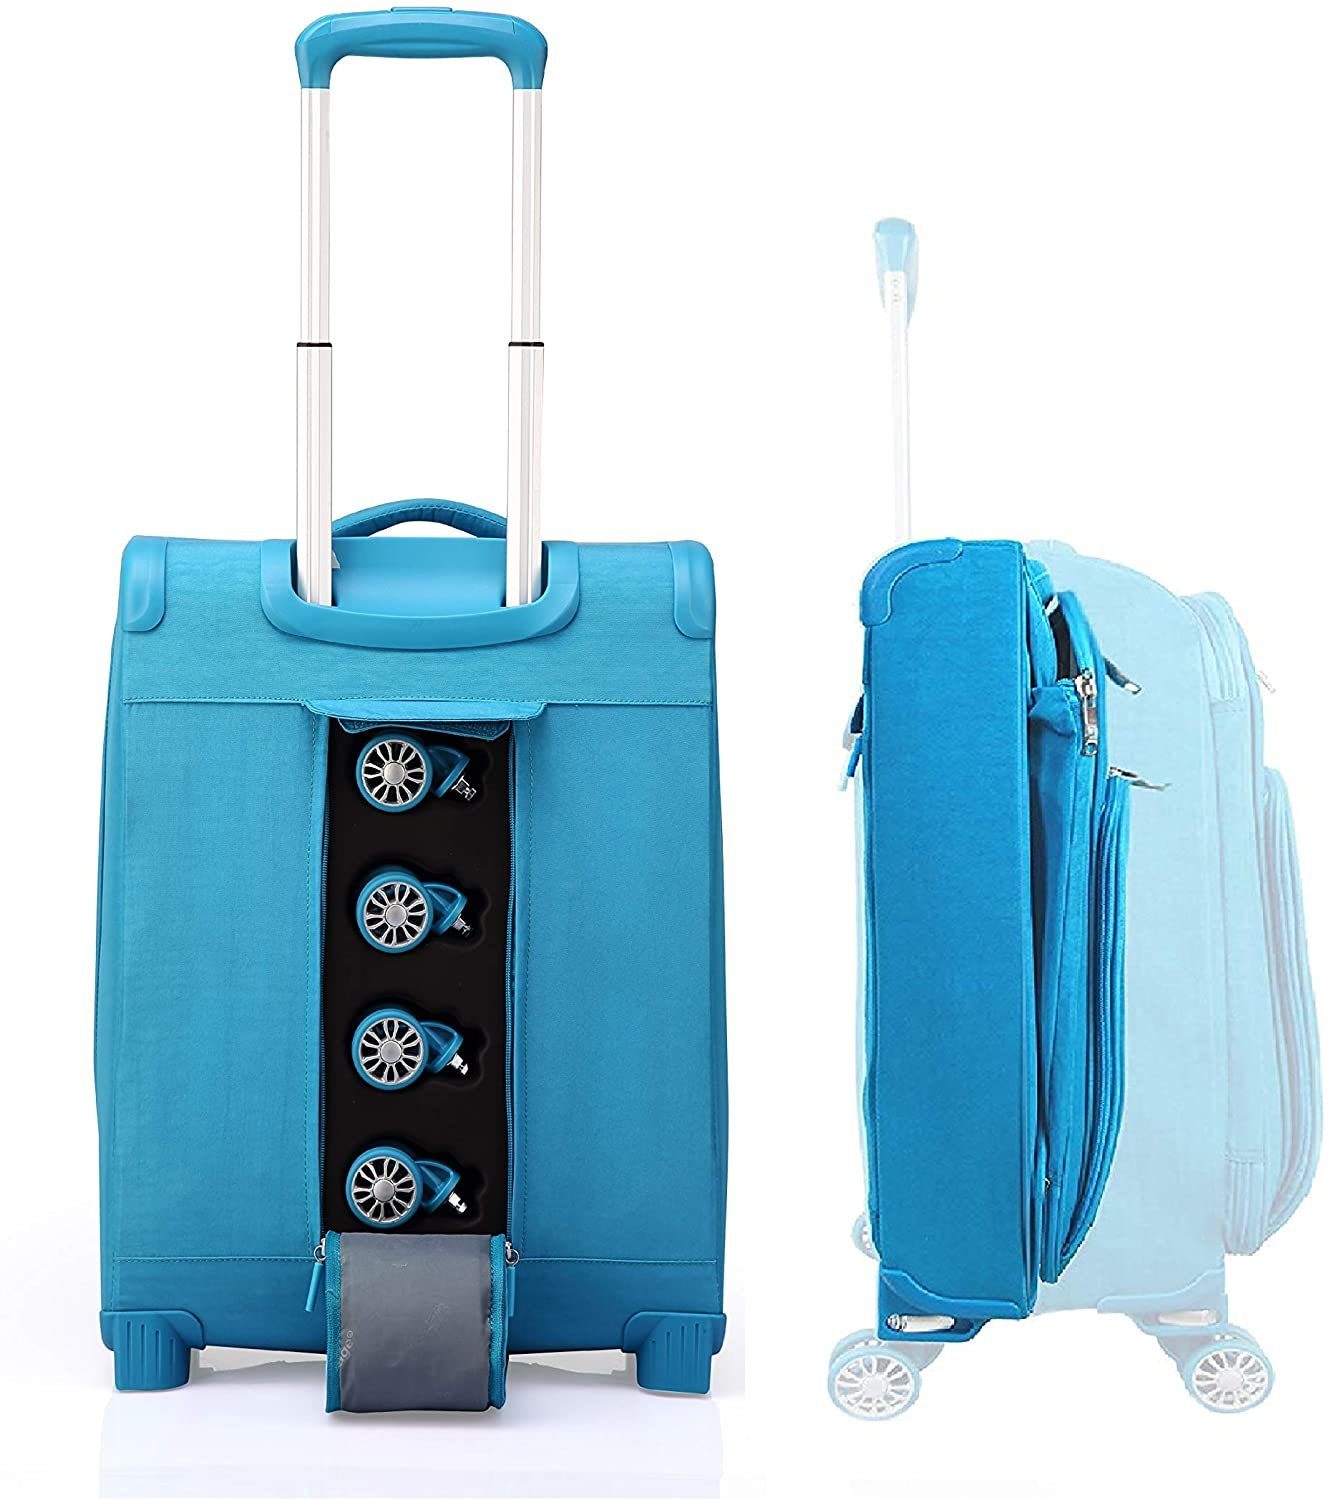 OUBO Koffer Verage funktionaler Trolley Handgepäck-Koffer zusammenfaltbar mit Gratis Aufbewahrungstasche, wasserdicht, 4 Doppelrollen abnehmbar Blau